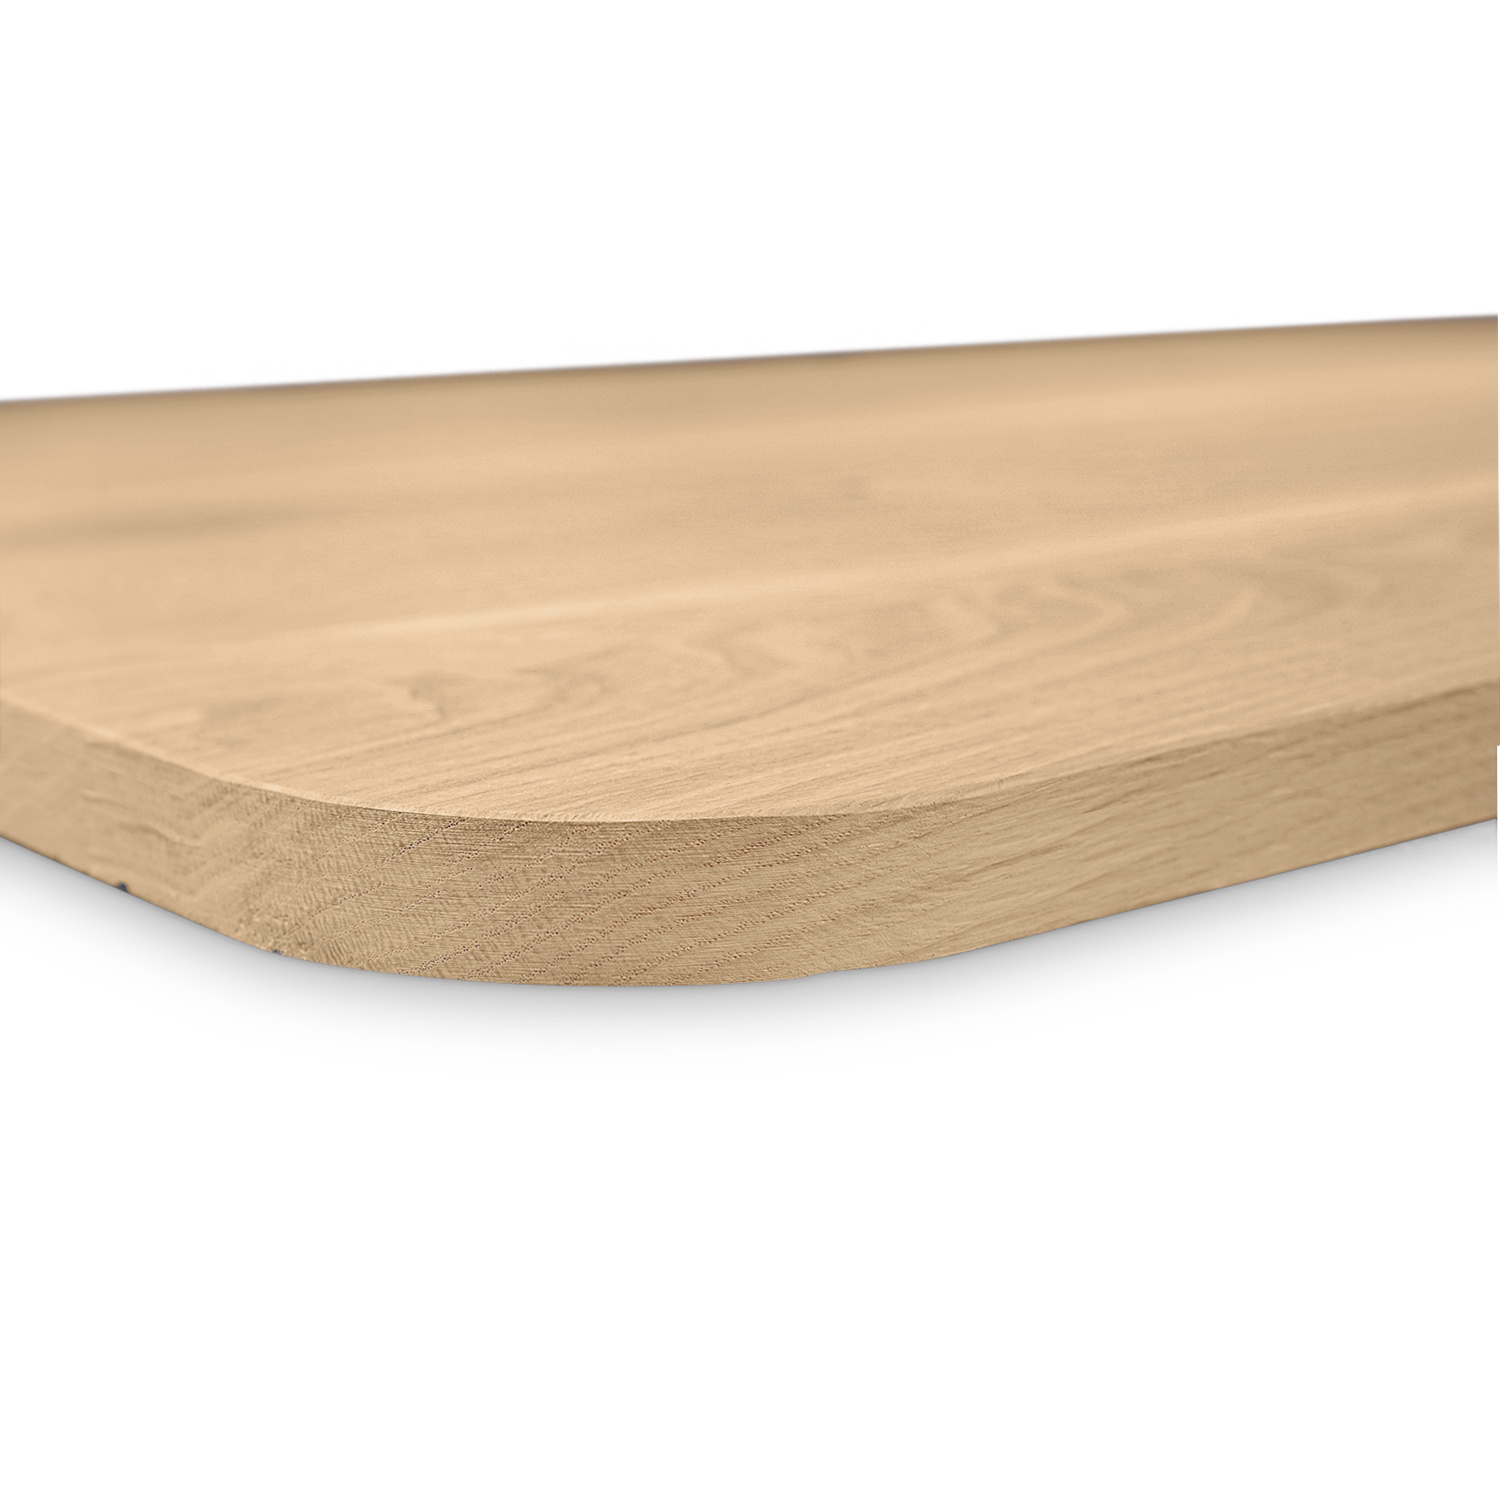  Tischplatte Wildeiche - mit runden Ecken - 2,5 cm dick (1-Schicht) - XXL Lamellen (14-20 cm breit) - Asteiche (rustikal) - verleimt & künstlich getrocknet (HF 8-12%) - mit abgerundeten Kanten - verschiedene Größen